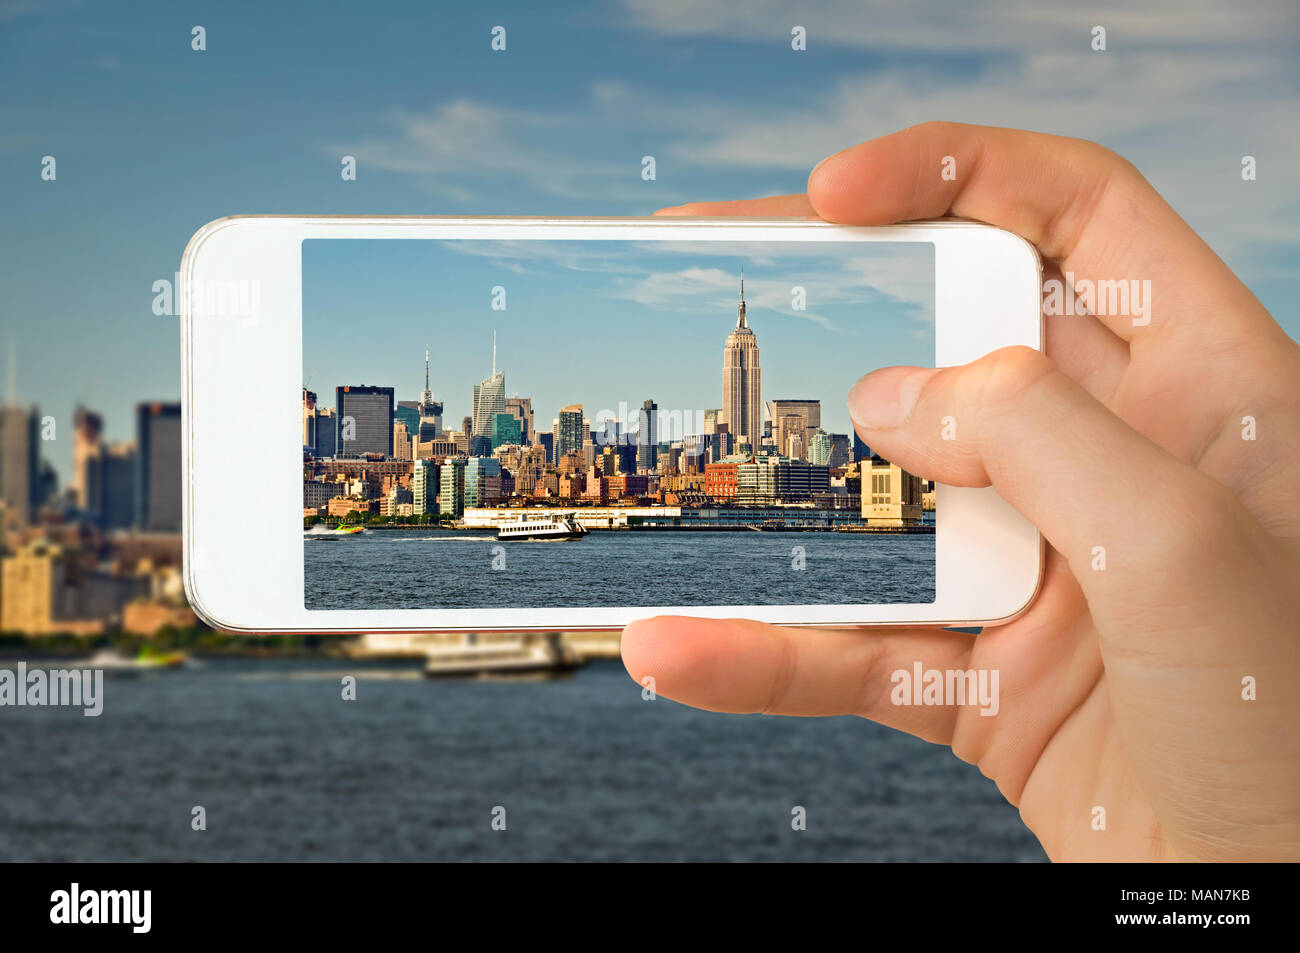 Libre d'une part avec le smartphone de prendre une photo de Manhattan skyline, New York USA Banque D'Images